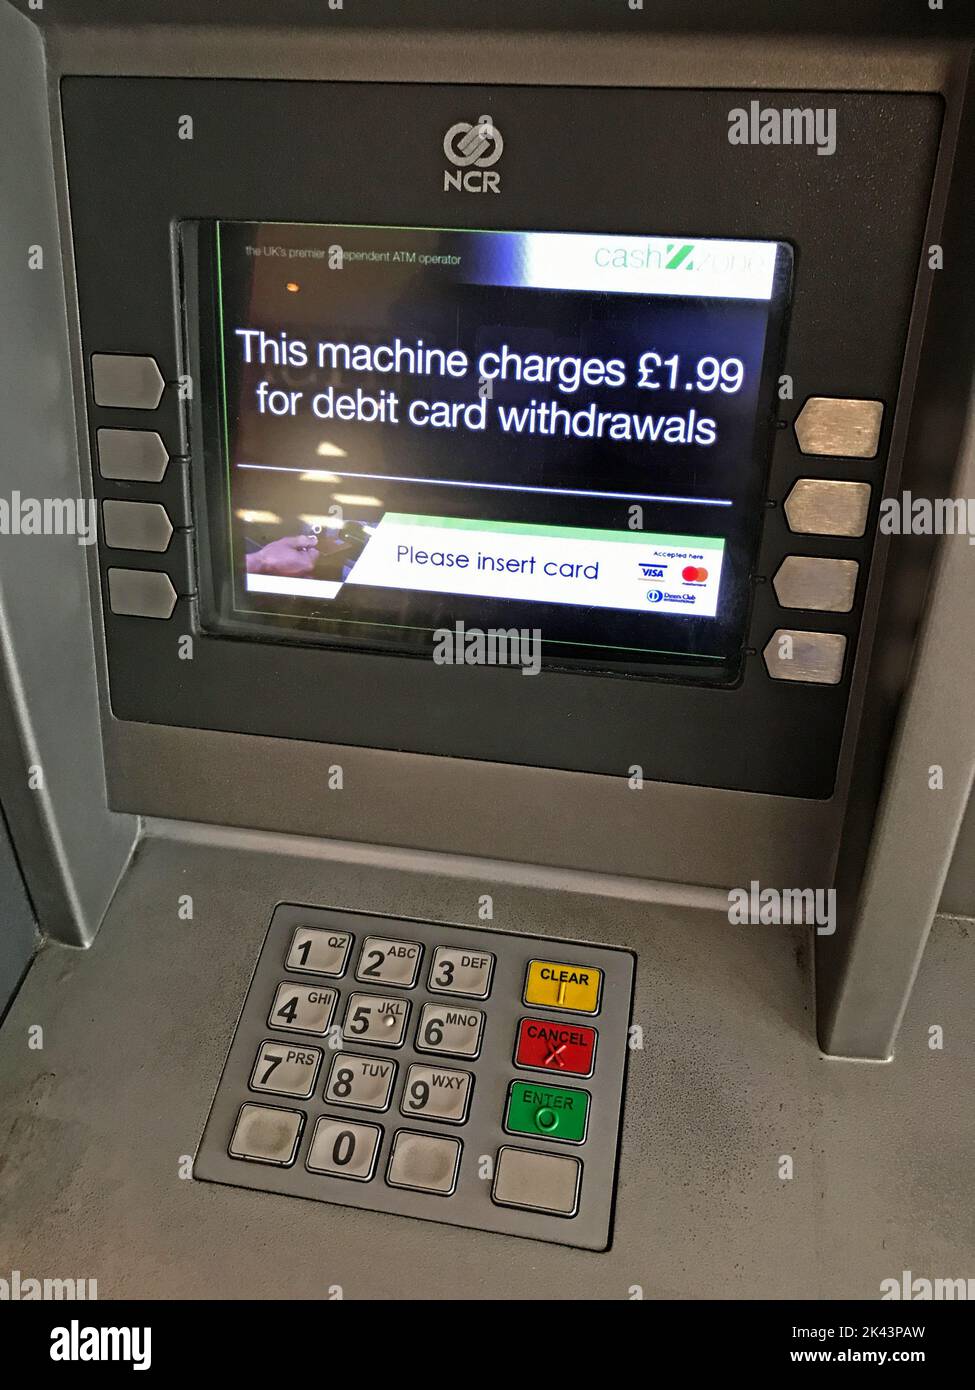 Distributeur automatique de billets pour les retraits par carte de débit, Angleterre, Royaume-Uni, veuillez insérer la carte. Accès coûteux à l'argent Banque D'Images